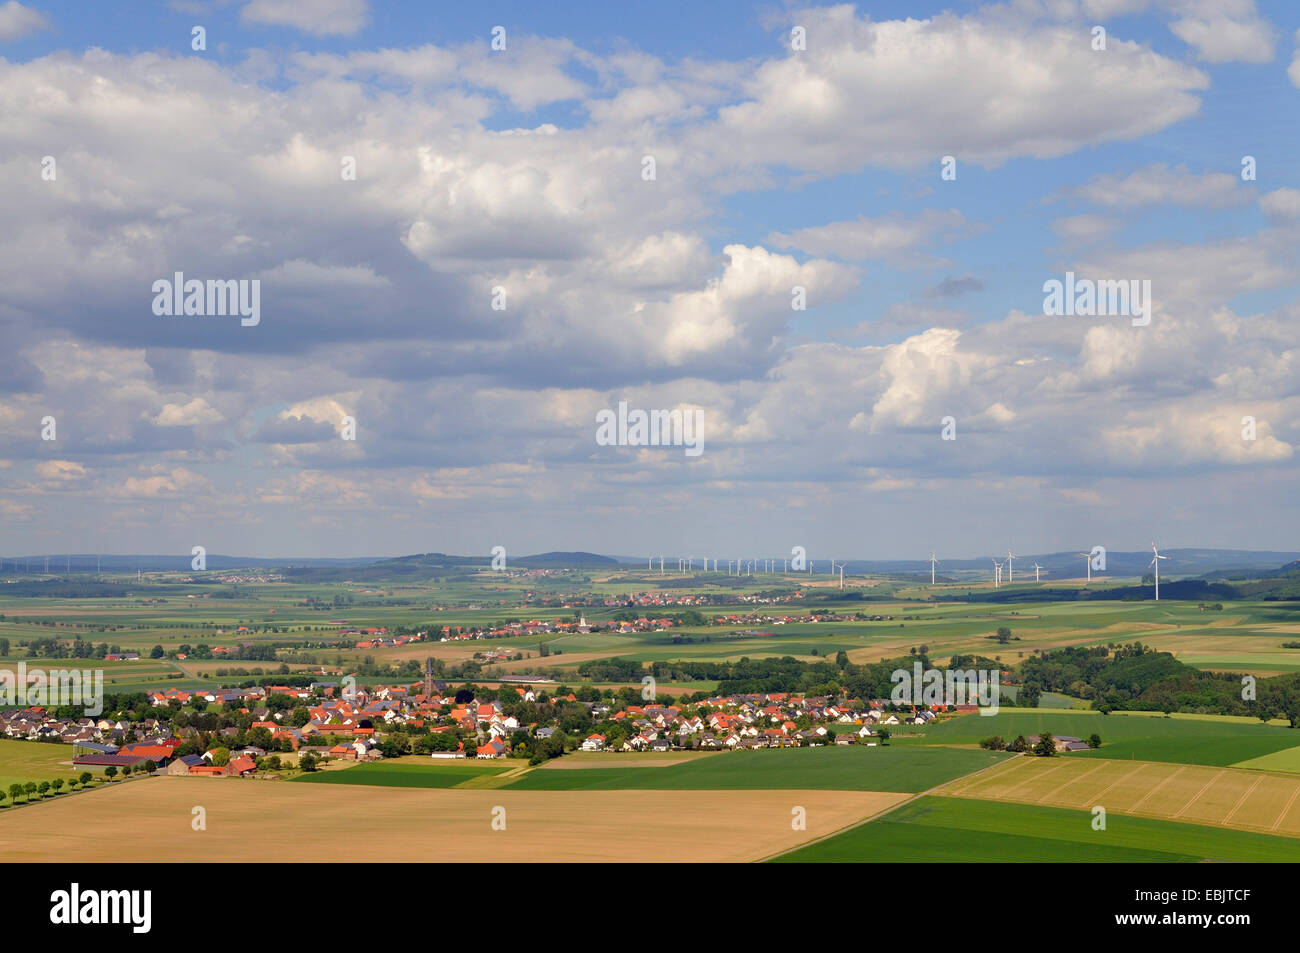 Vista panorámica de un paisaje agrícola de la planta de energía eólica, Alemania Foto de stock